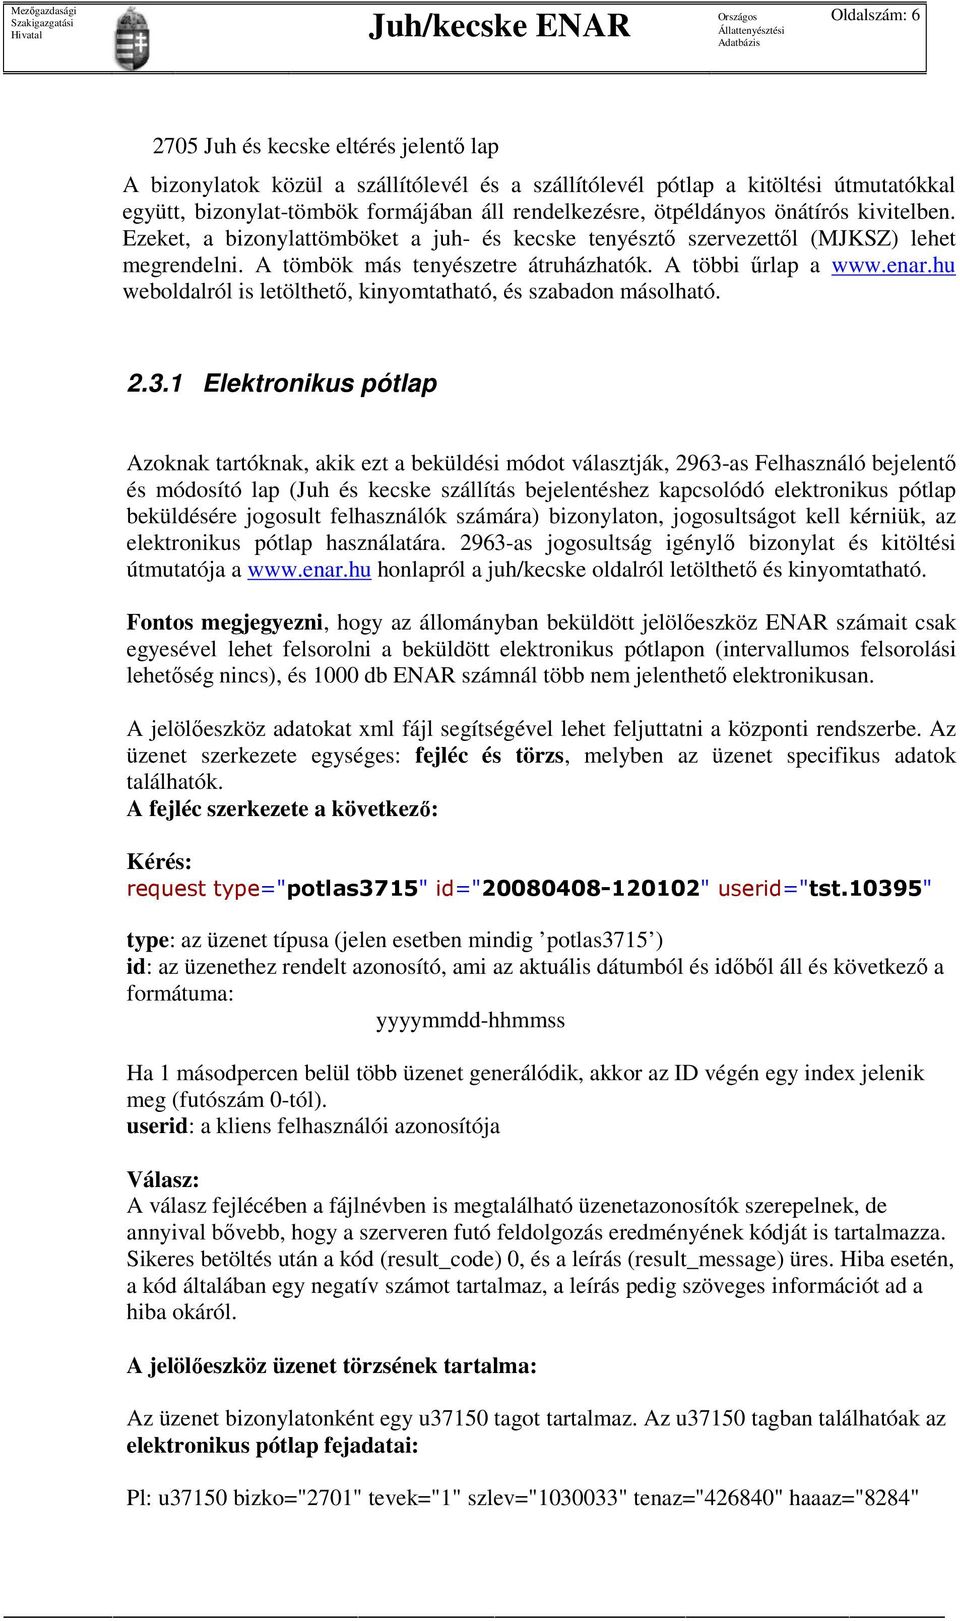 A többi őrlap a www.enar.hu weboldalról is letölthetı, kinyomtatható, és szabadon másolható. 2.3.